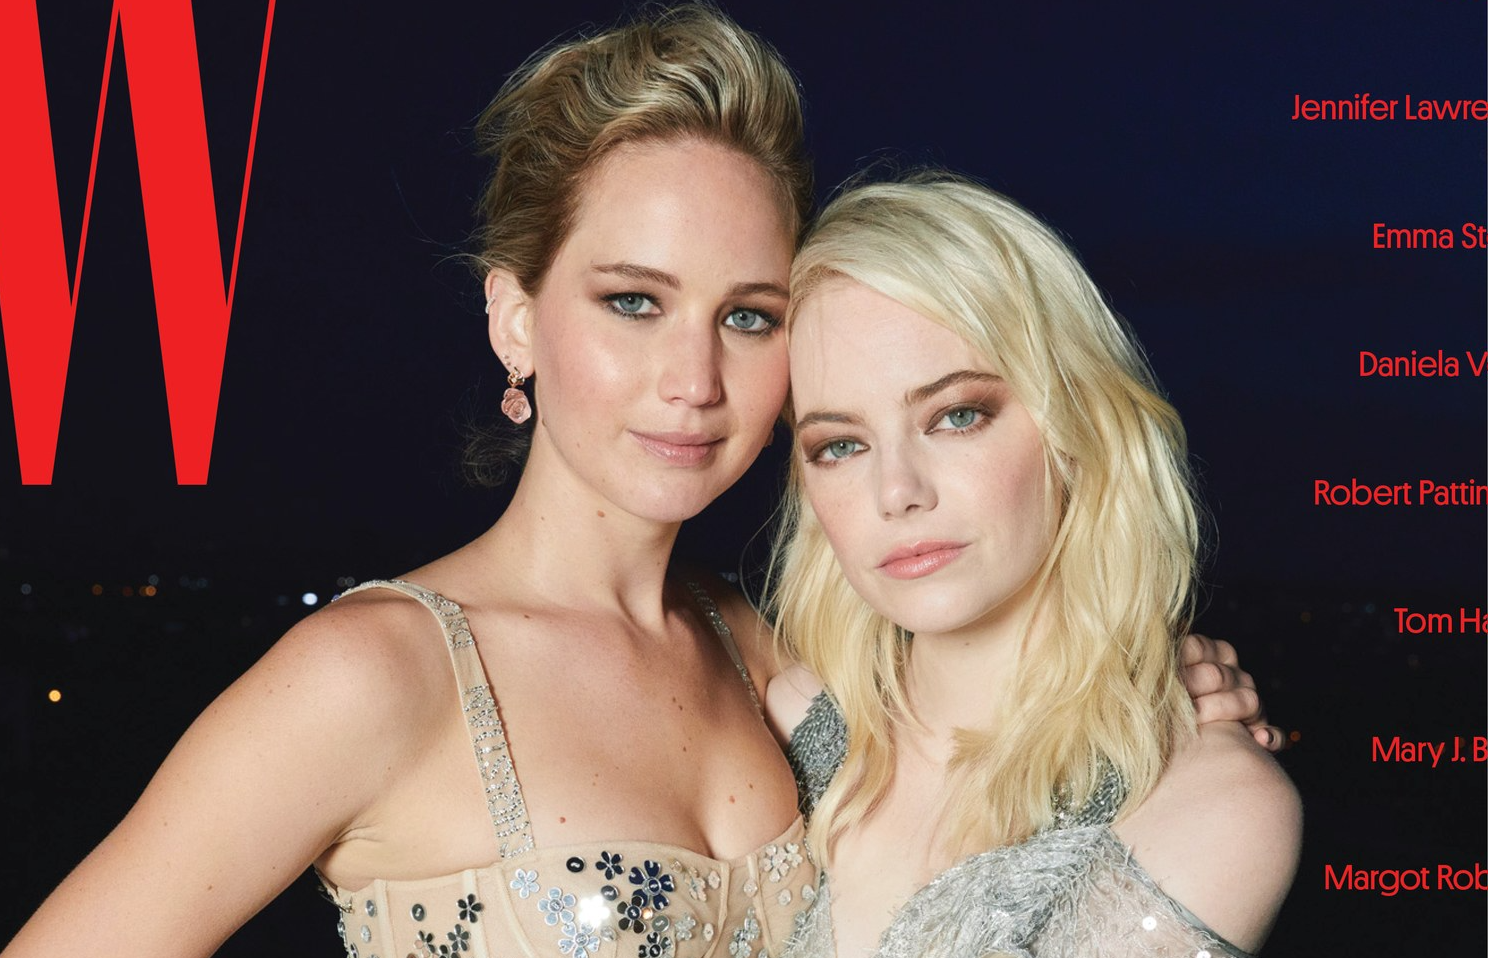 Jennifer Lawrence & Emma Stone Bonded Over Having The Same ‘Stalker’